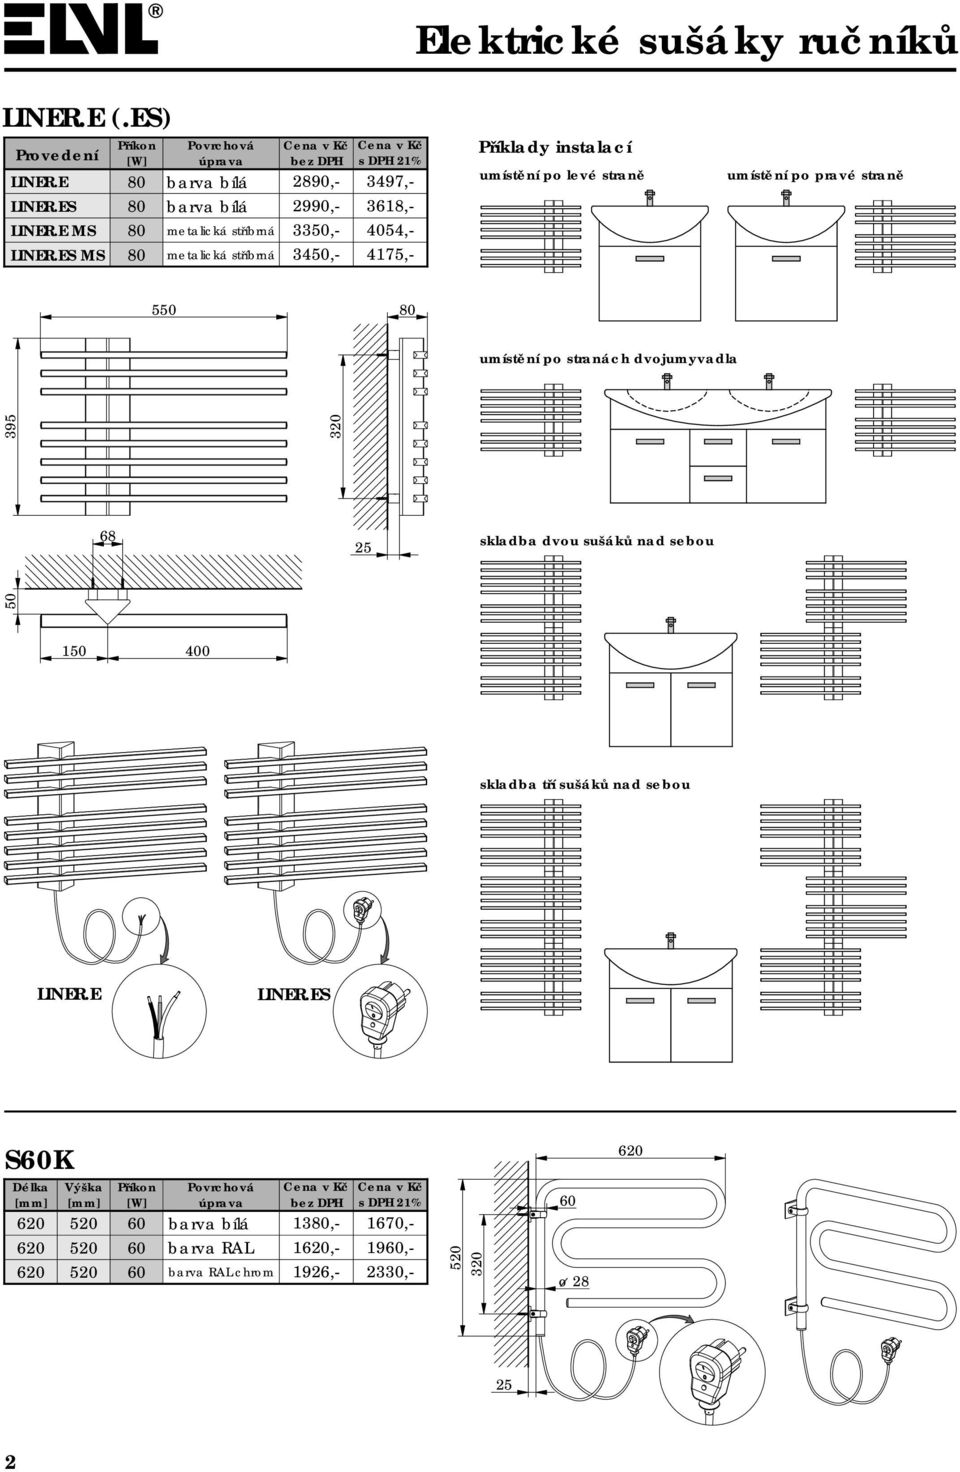 Příklady instalací umístění po levé straně umístění po pravé straně 5 80 umístění po stranách dvojumyvadla 68 skladba dvou sušáků nad sebou 395